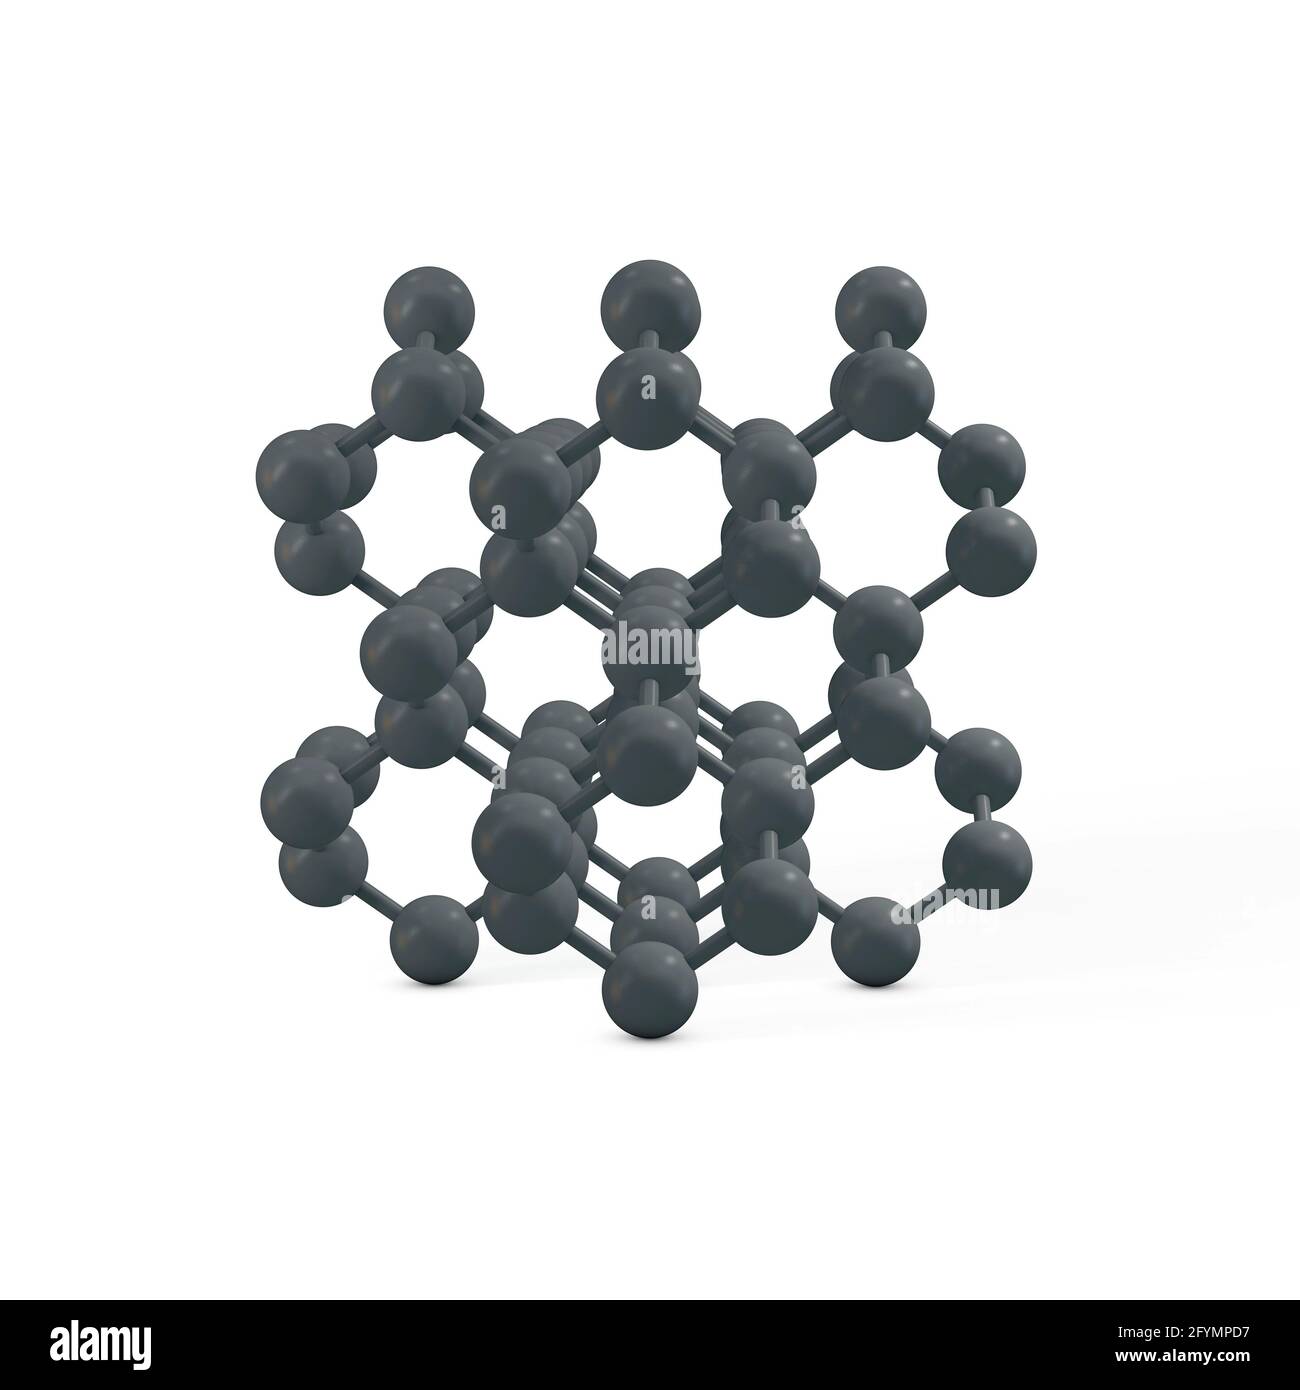 diamond structure vs graphite structure